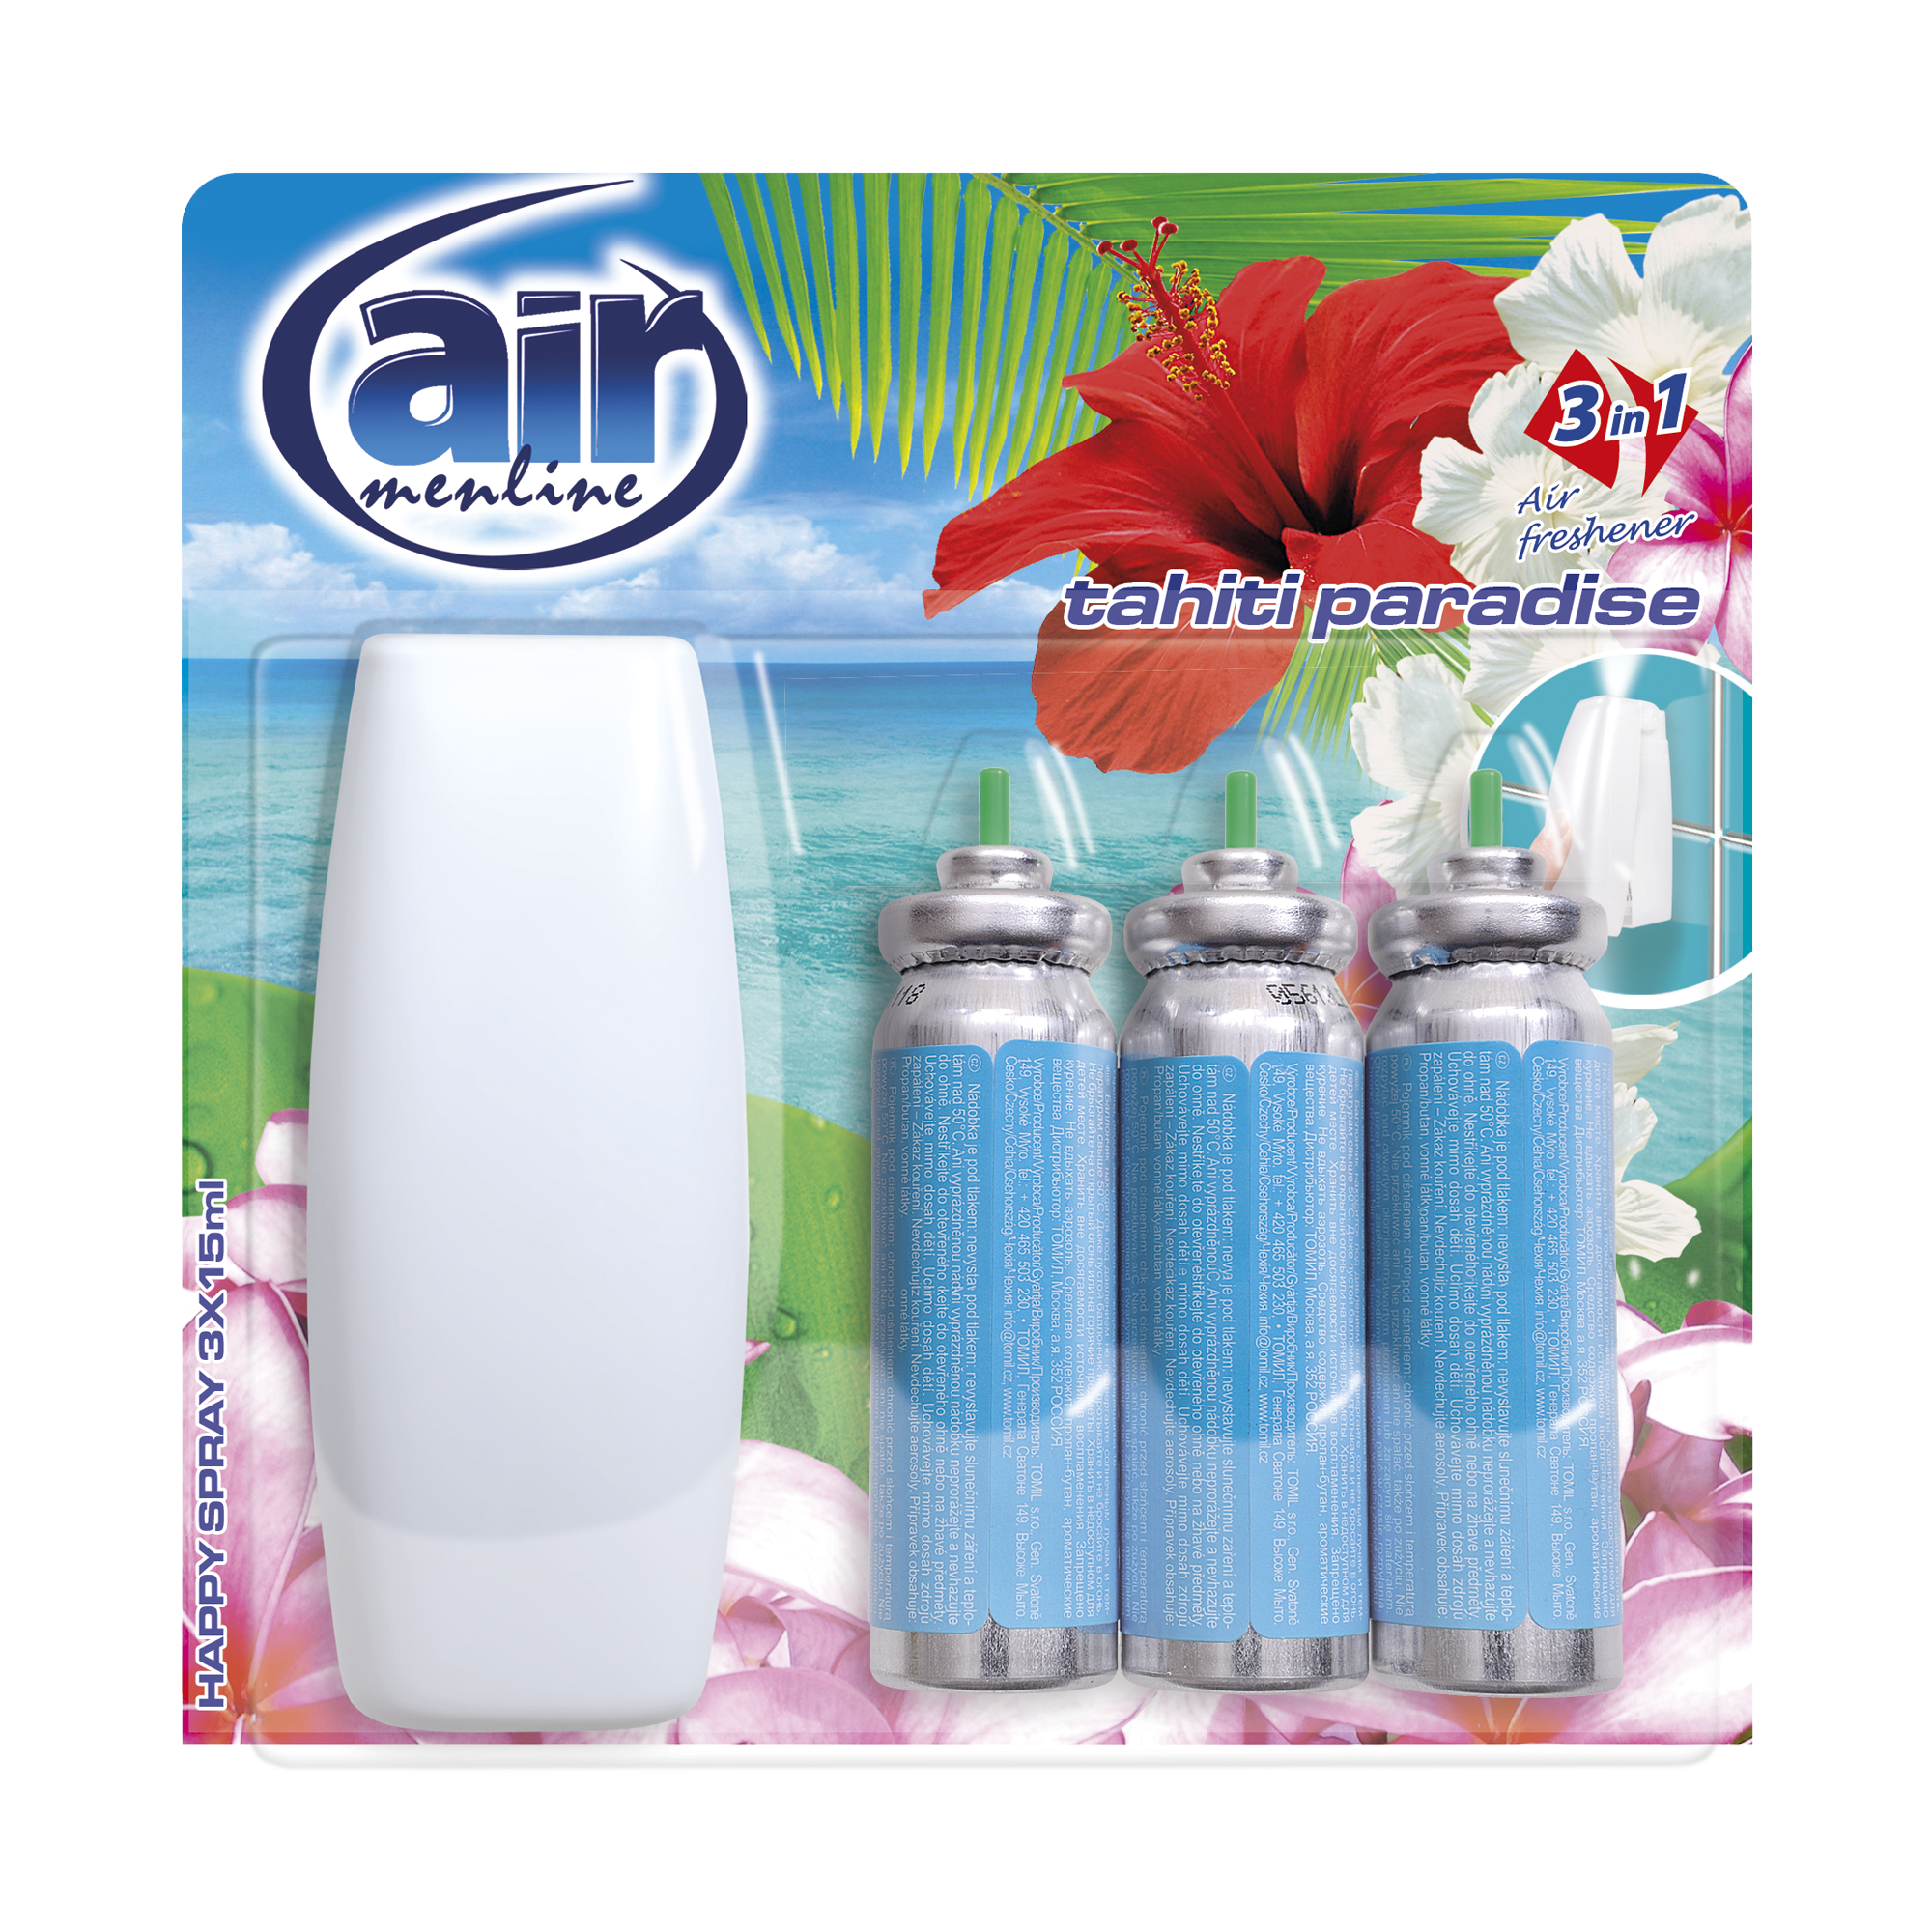 The tahiti paradise Happy spray